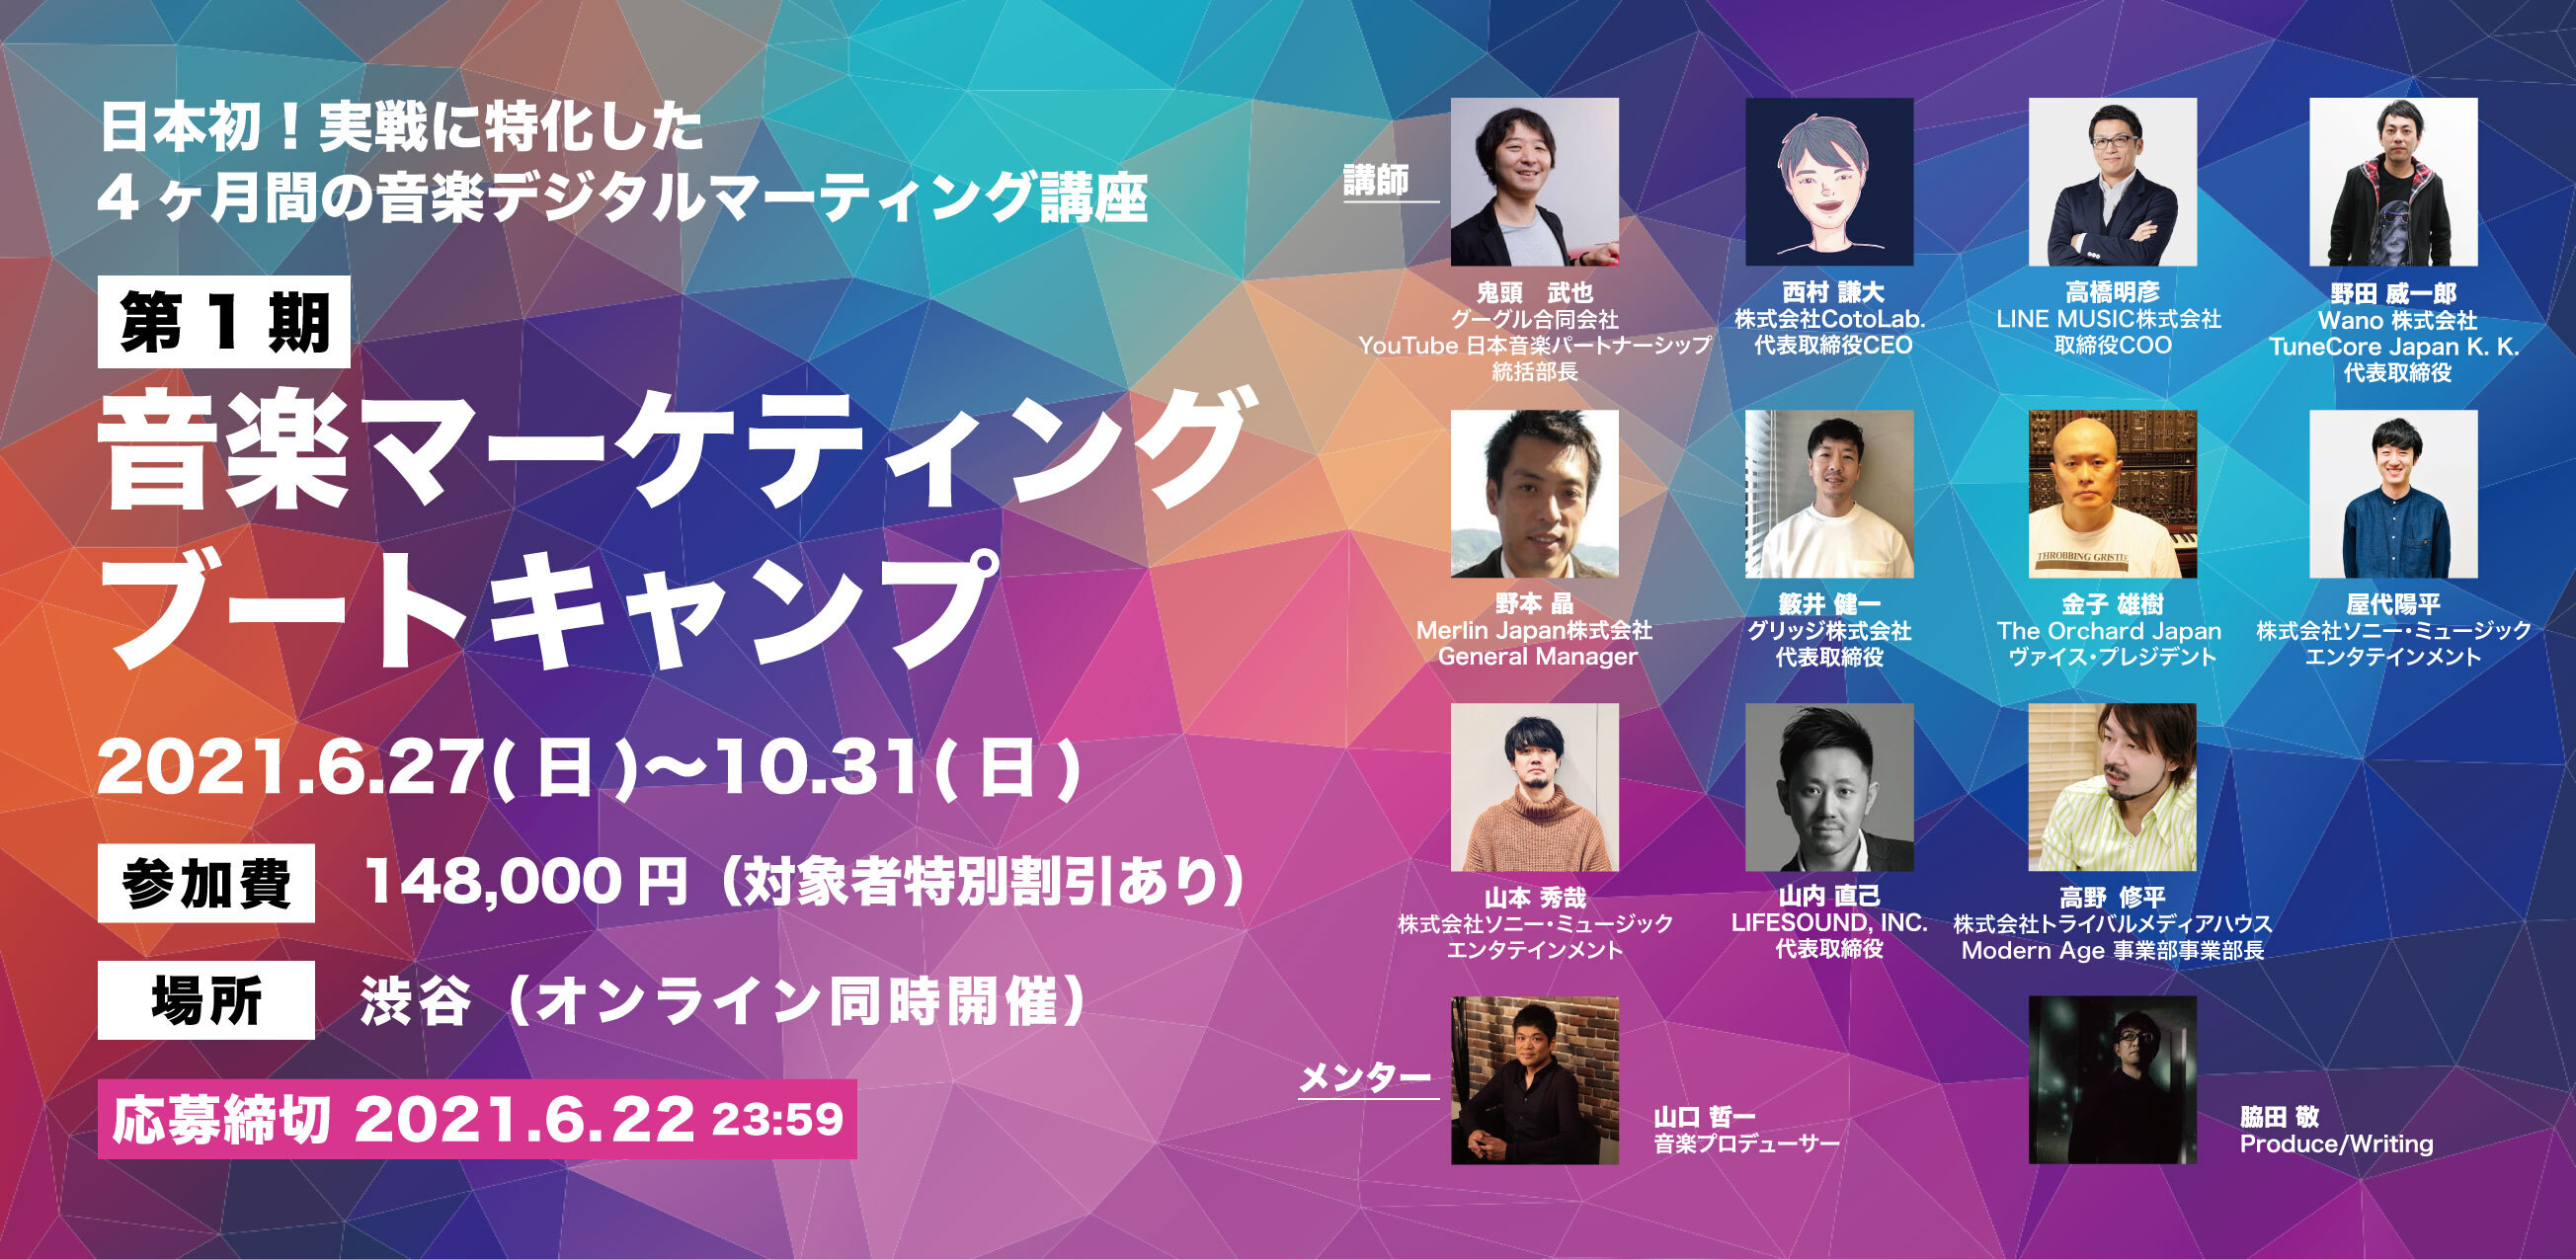 日本一の音楽デジタルマーケターになれる 4ヶ月の超実戦 音楽マーケティング講座が開講決定 Studio Entre株式会社のプレスリリース